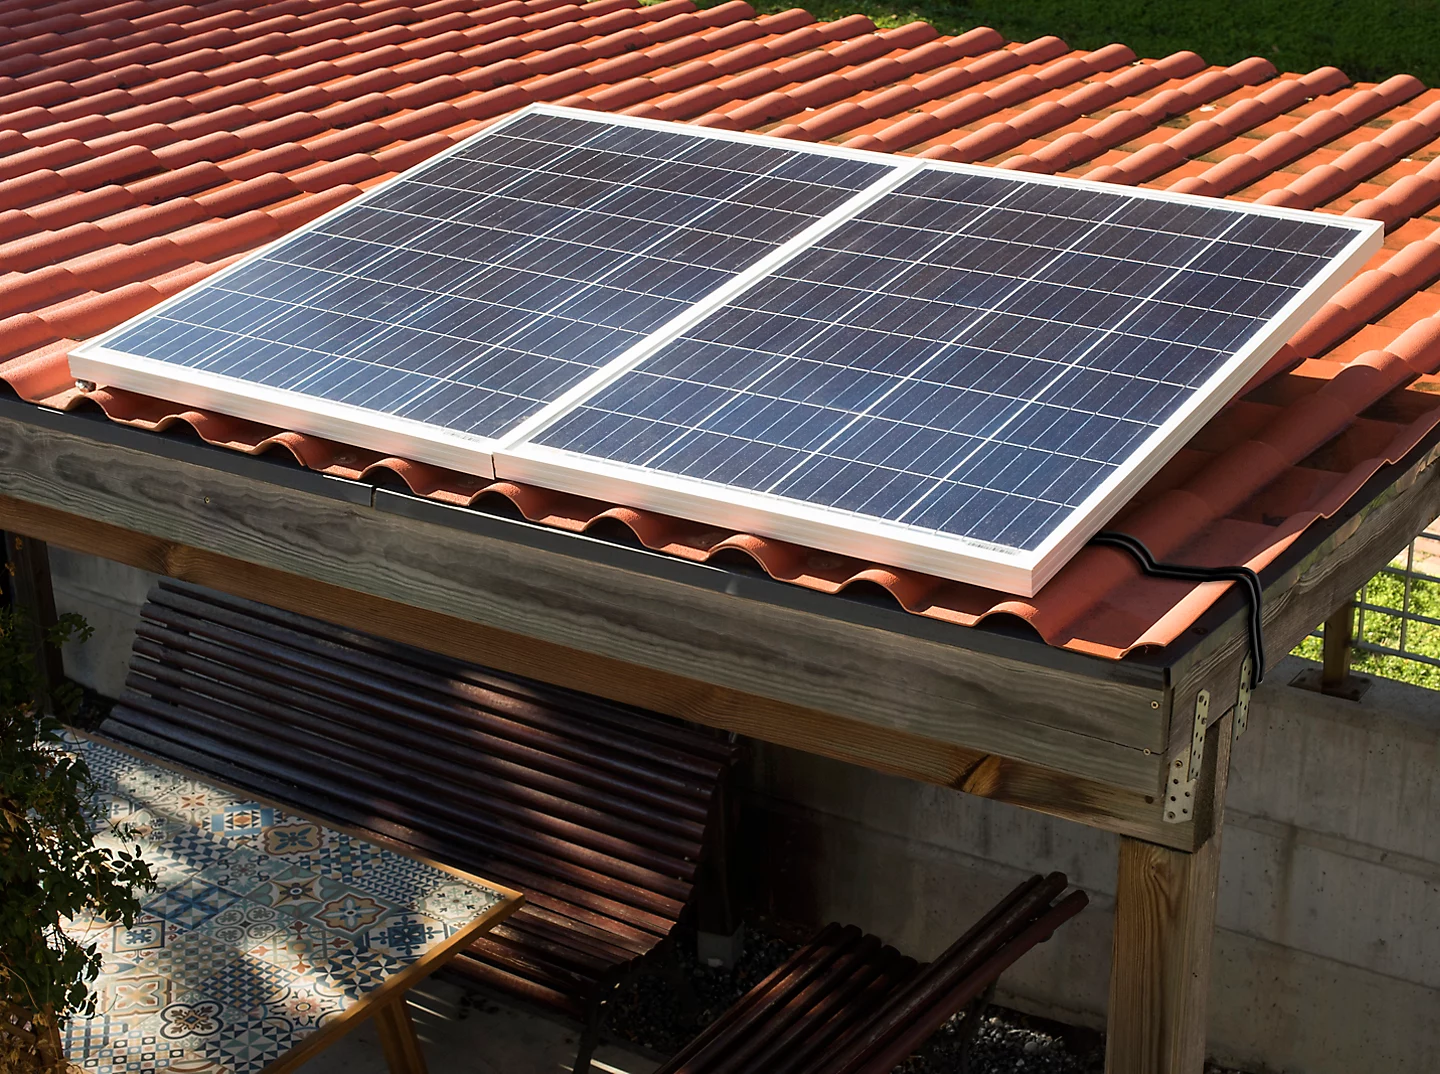 Panel solar fotovoltaico en un tejado.